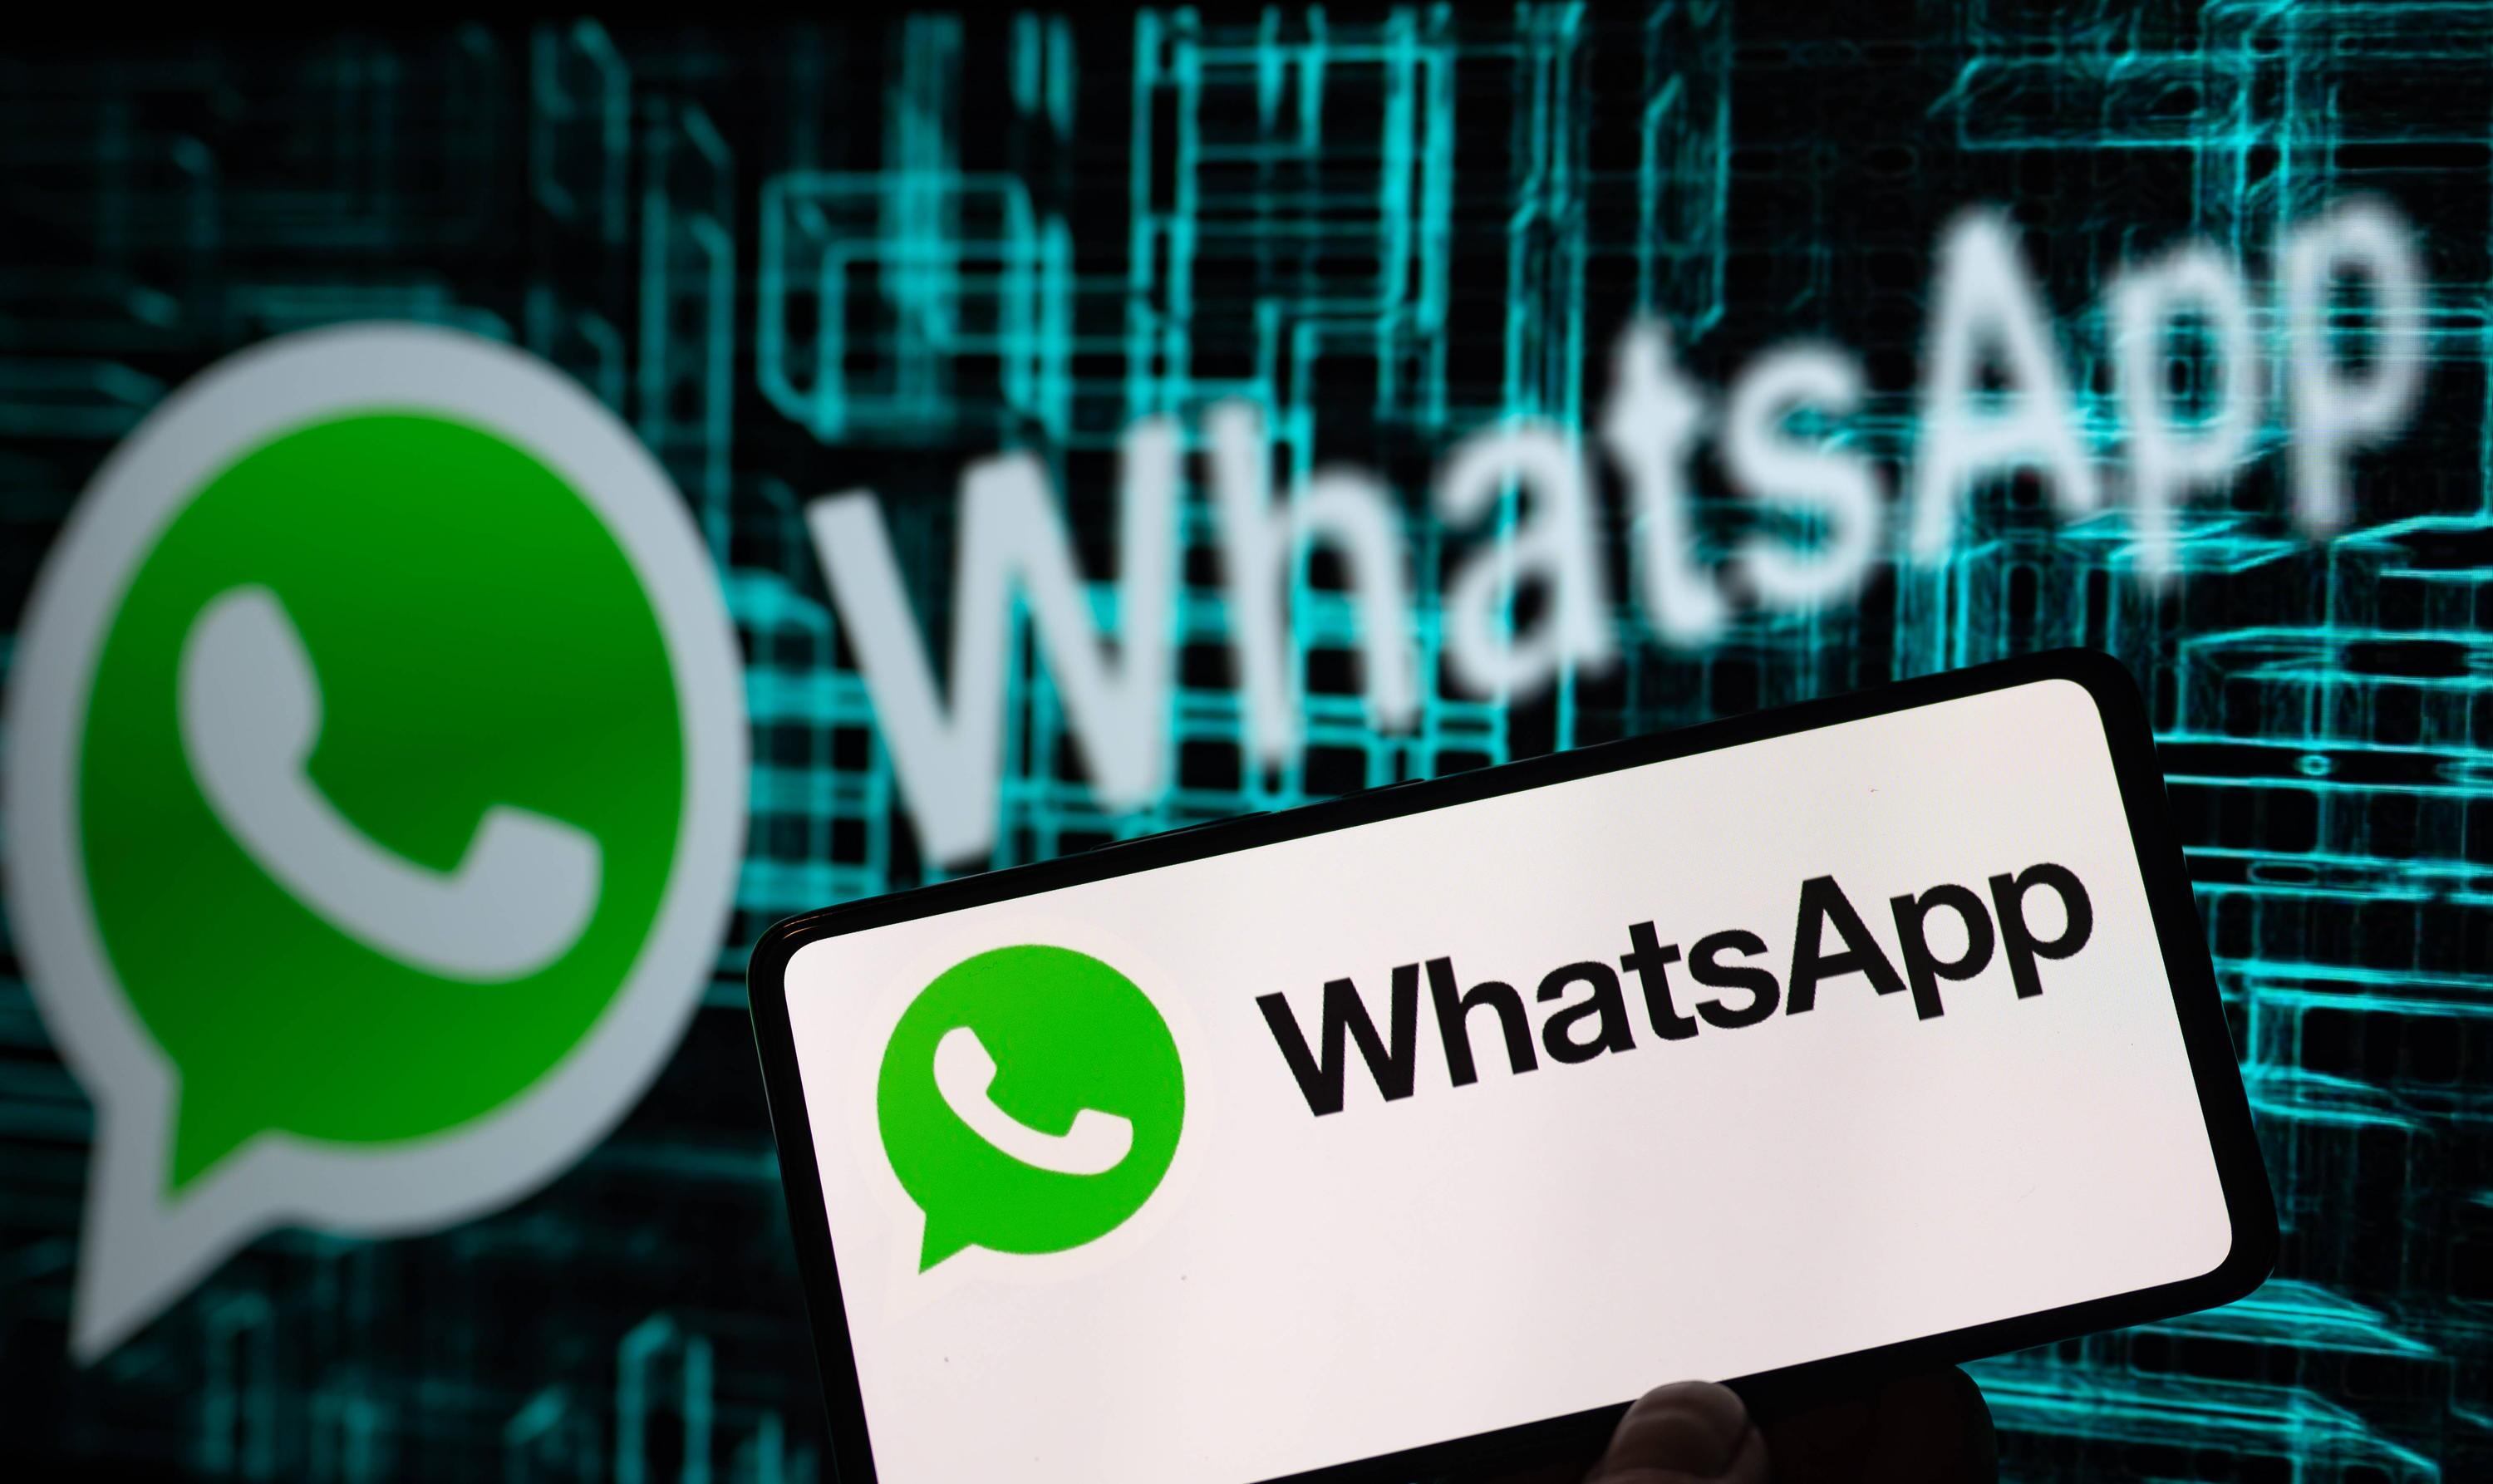 whatsApp seeker filtering software